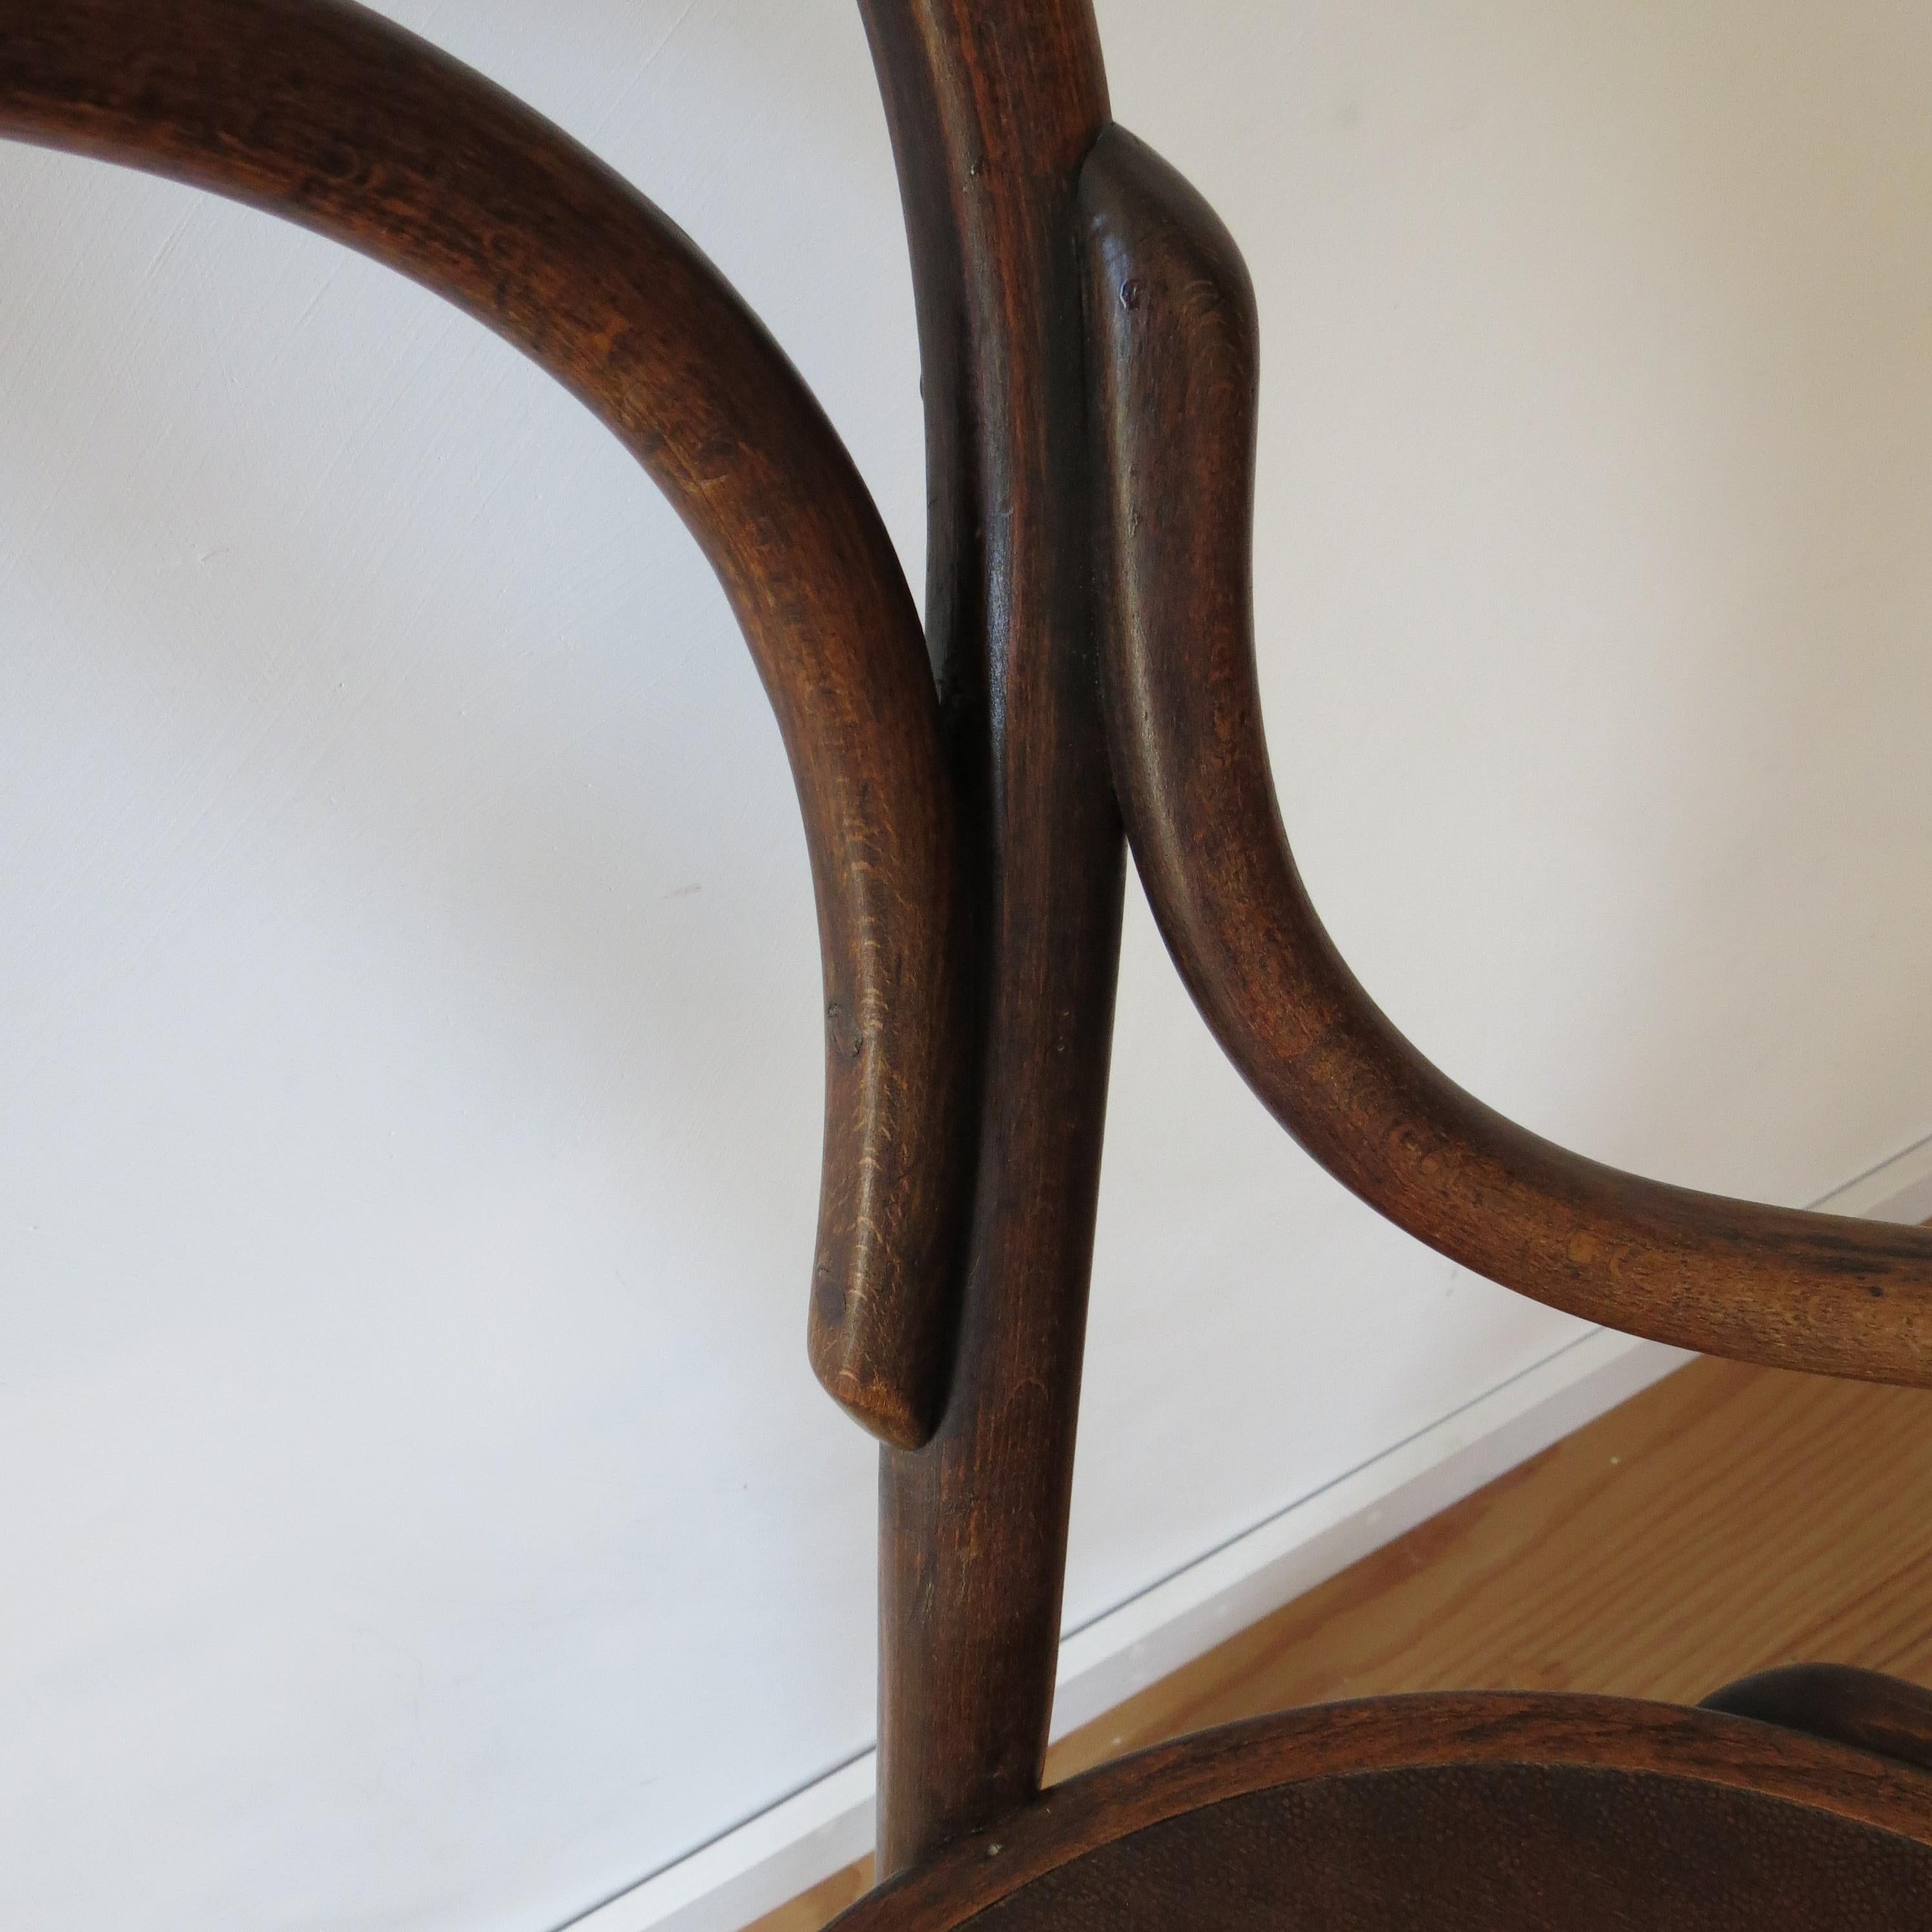 Antique Bentwood Chair No 14 by Thonet 19th Century Art Nouveau 5